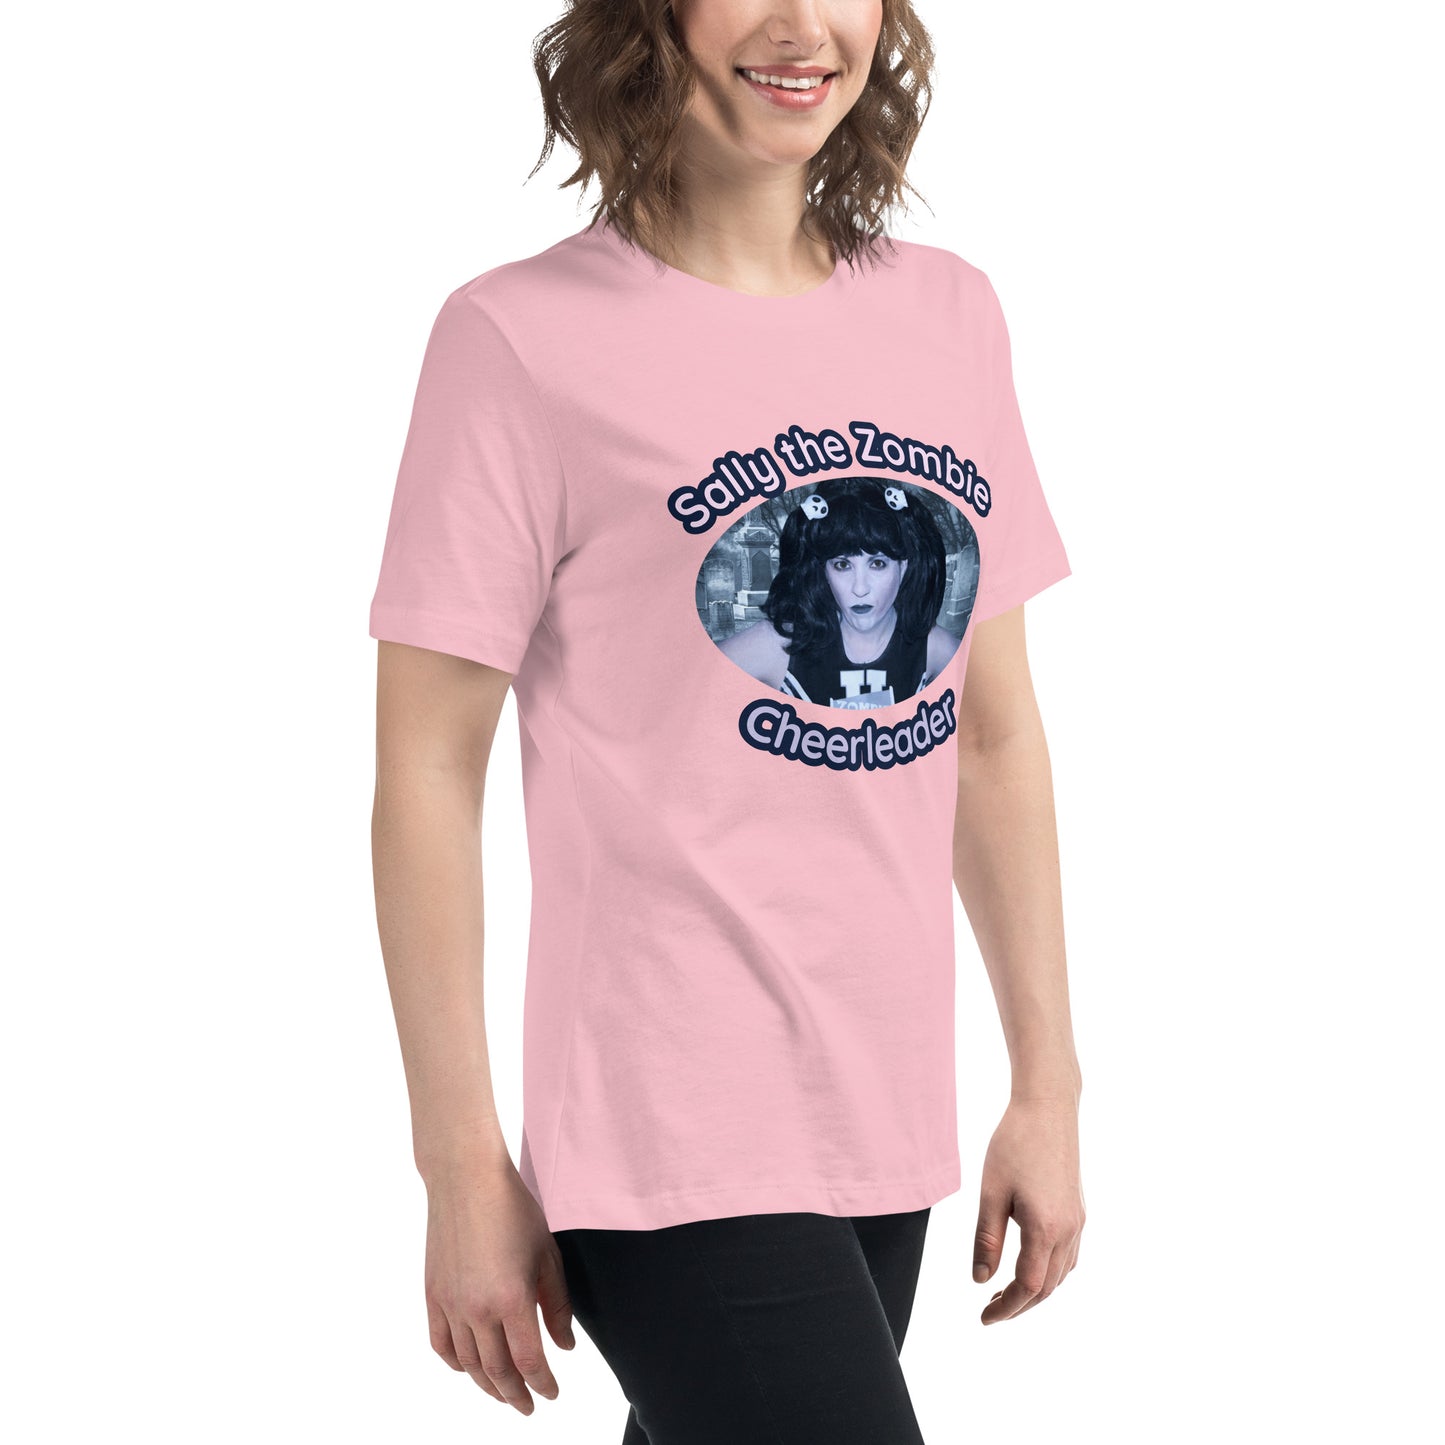 Sally TZC Women's Relaxed T-Shirt